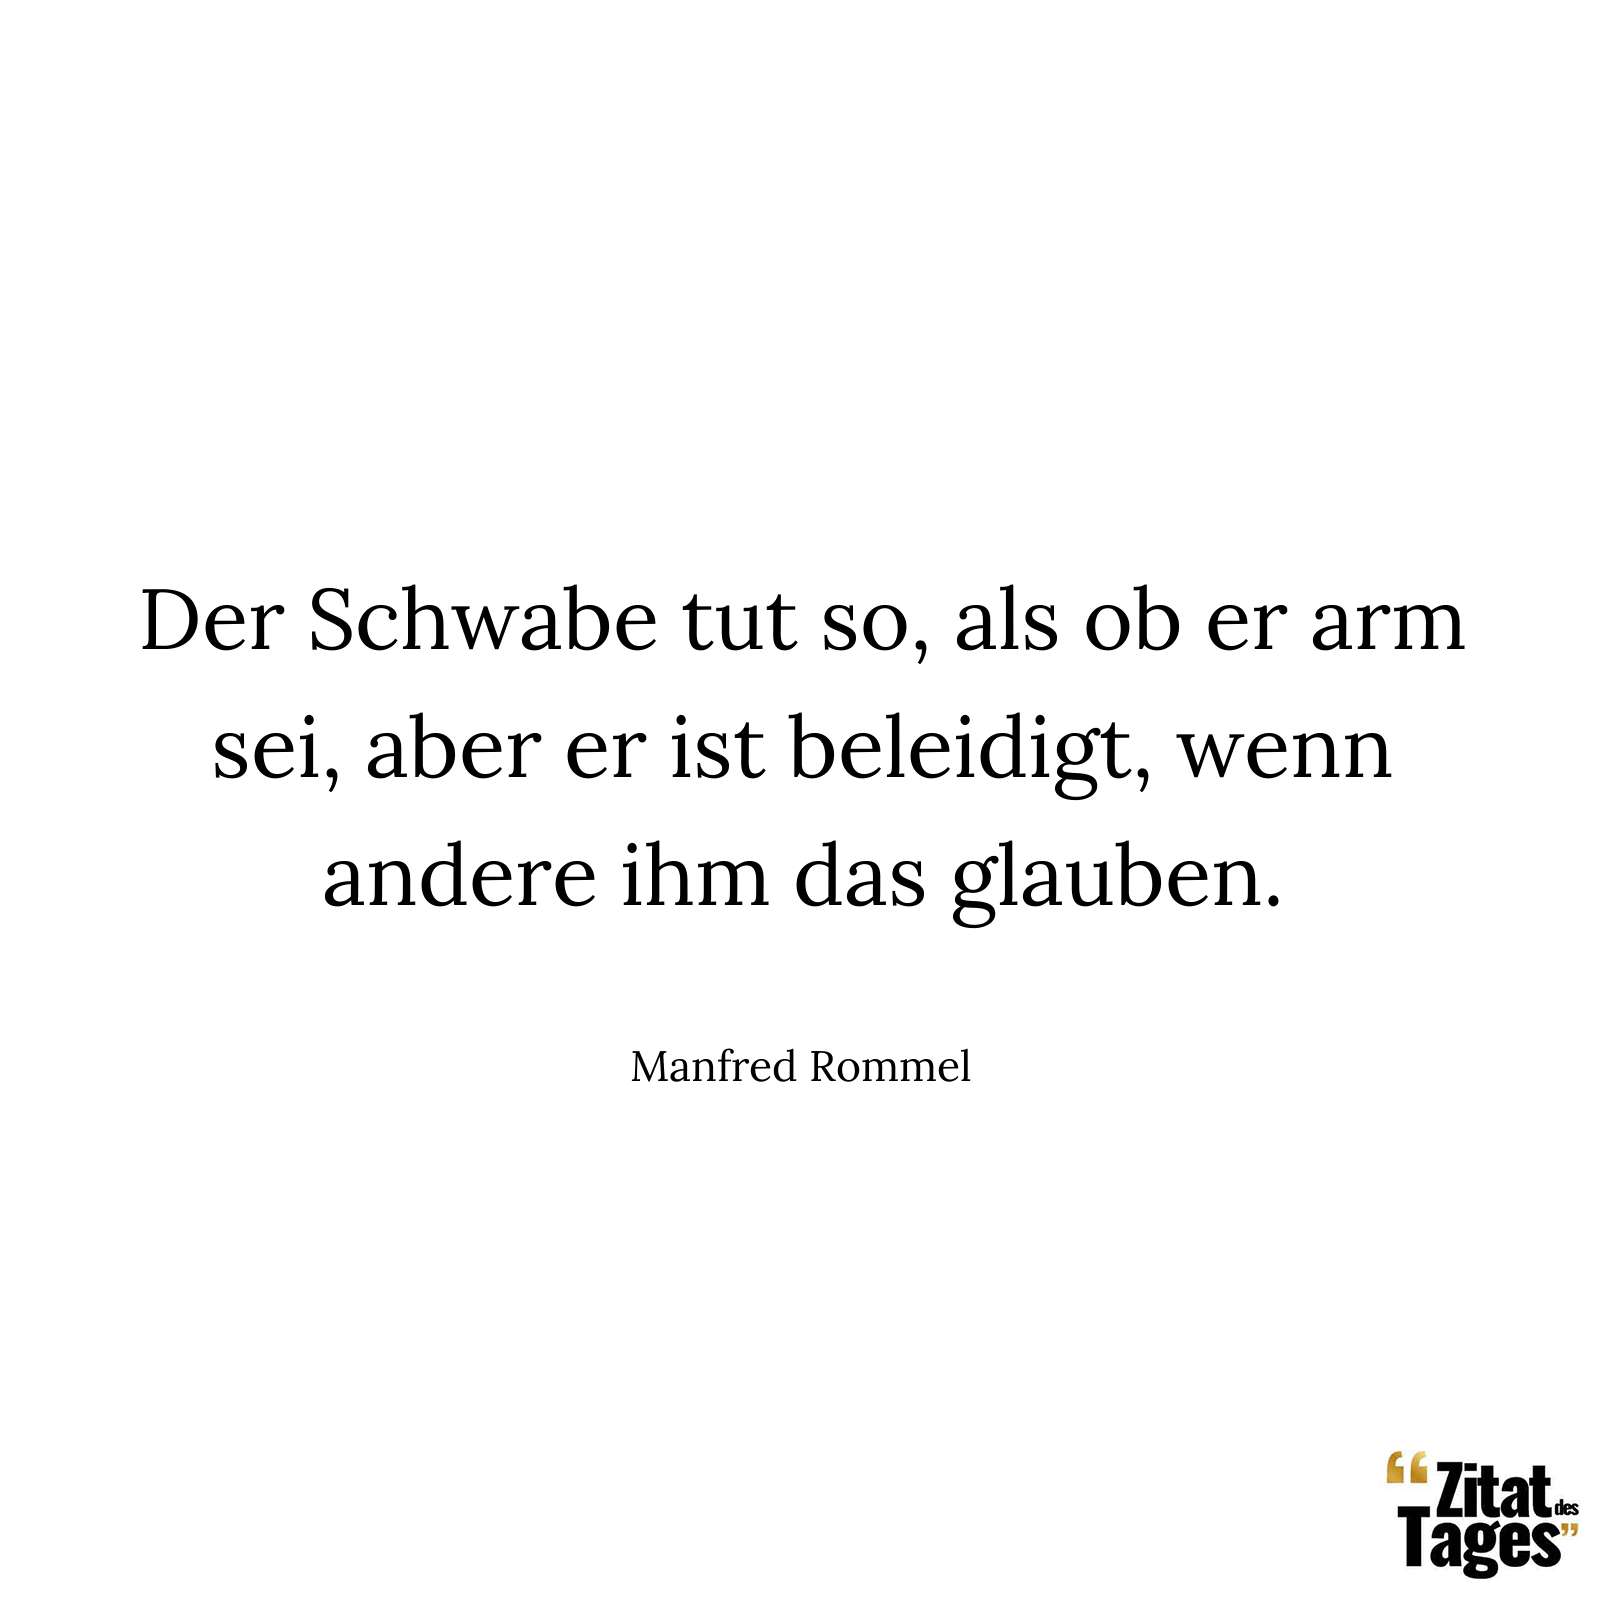 Der Schwabe tut so, als ob er arm sei, aber er ist beleidigt, wenn andere ihm das glauben. - Manfred Rommel